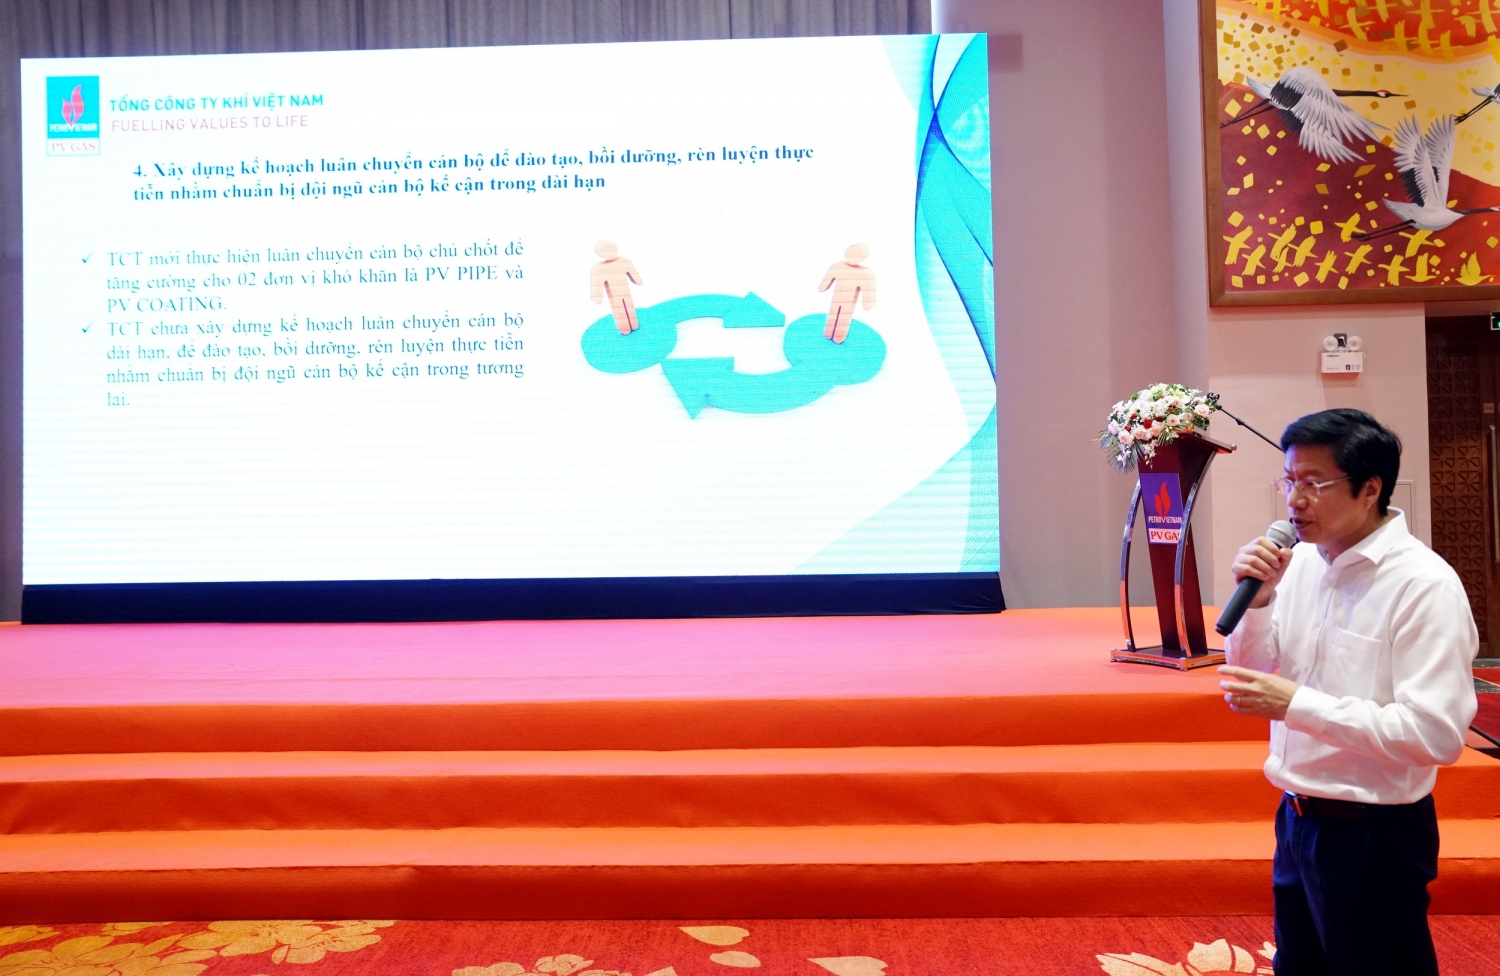 Đồng chí Trần Đức Sơn – Phó Bí thư Đảng ủy, Trưởng Ban Tổ chức - Nhân sự trình bày báo cáo tổng kết, đánh giá về công tác cán bộ và Người đại diện năm 2022